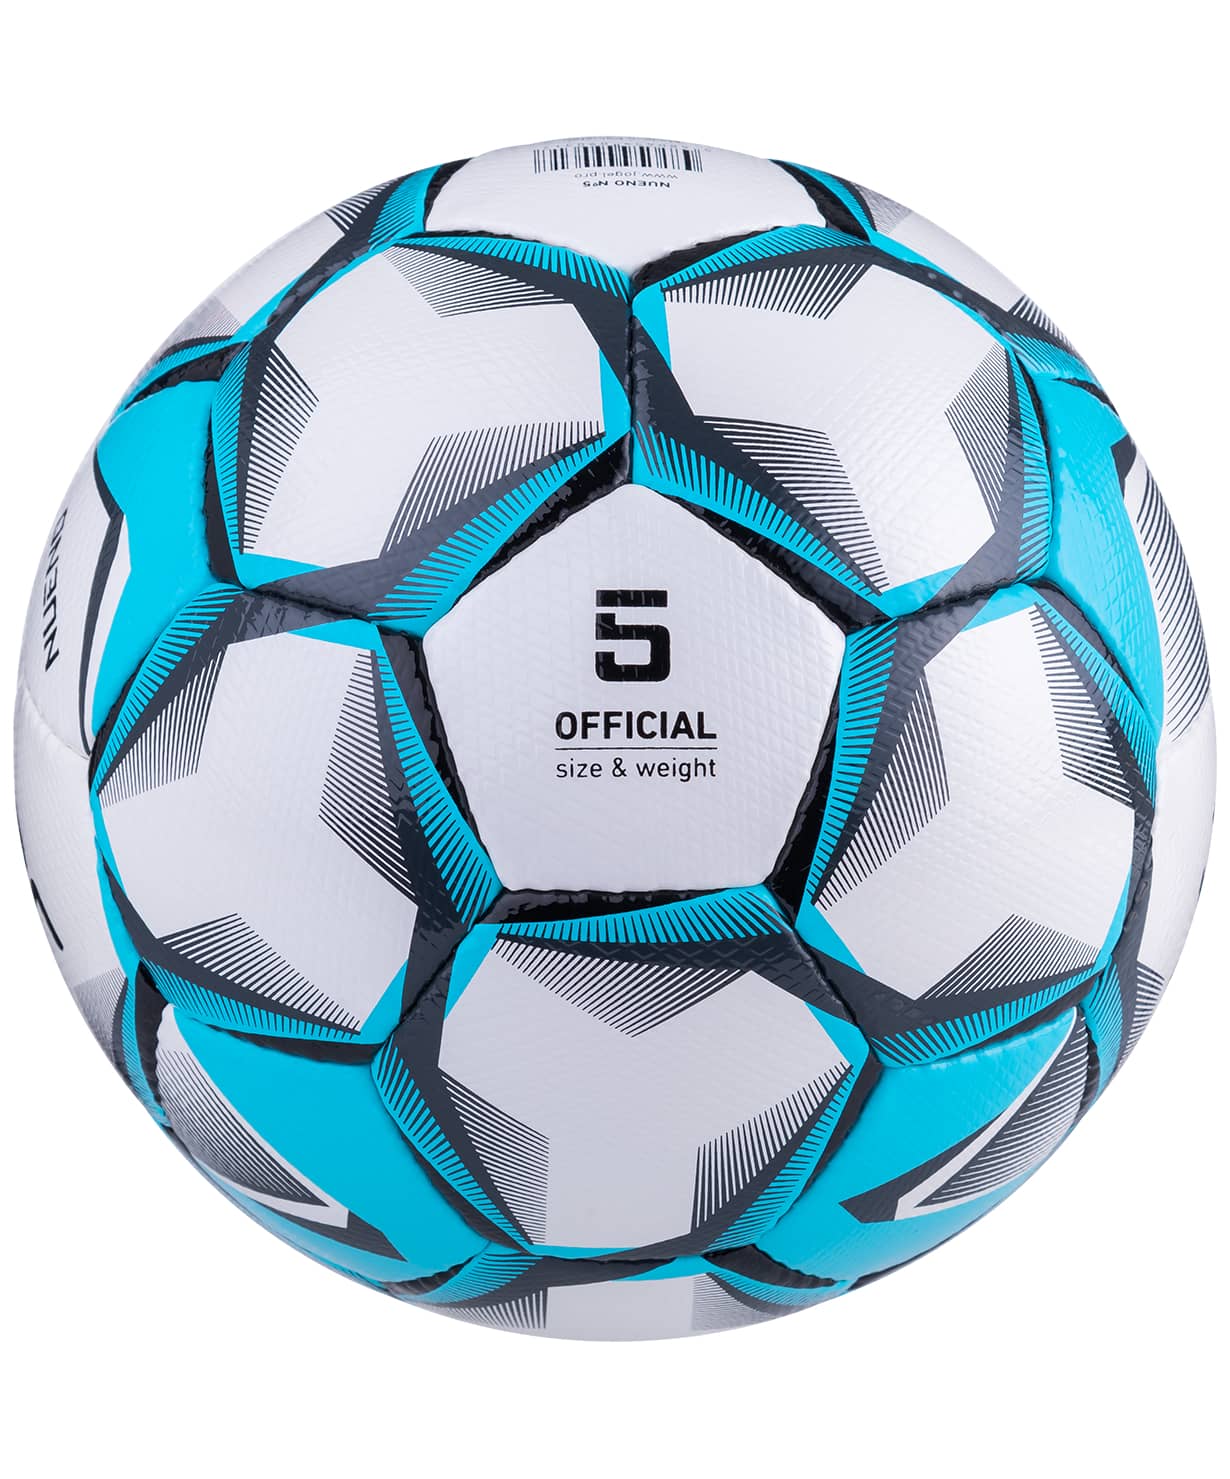 фото Jögel Nueno мяч футбольный белый/голубой/черный размер 5 Football-54 